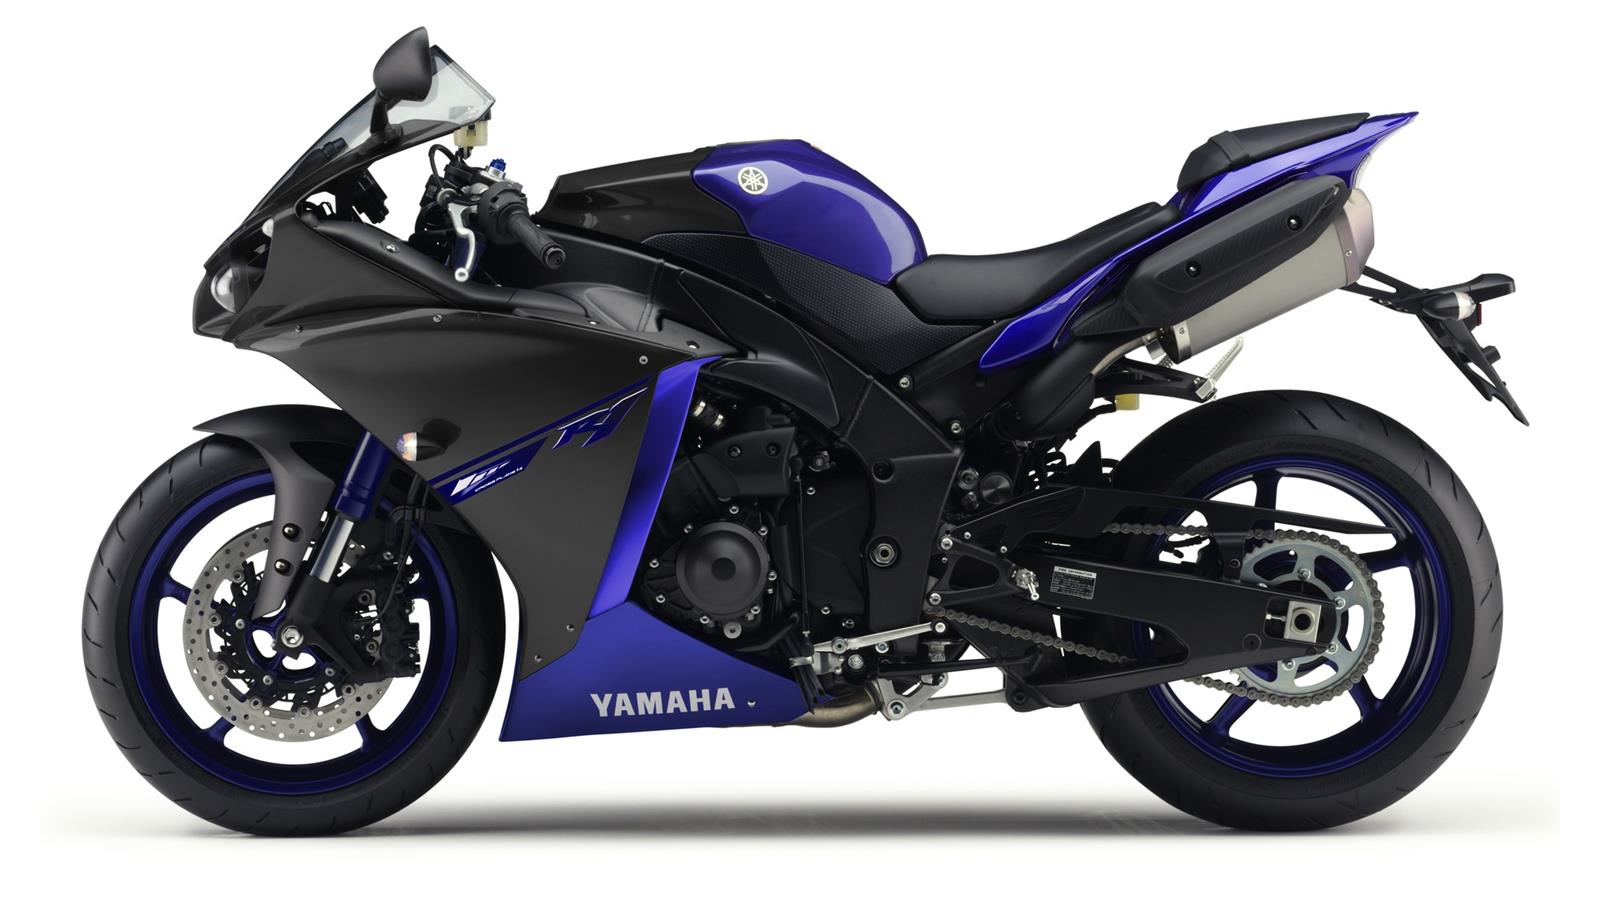 Thu hồi mô tô Yamaha YZF-R1 phiên bản 2015 do lỗi về bánh răng hộp số